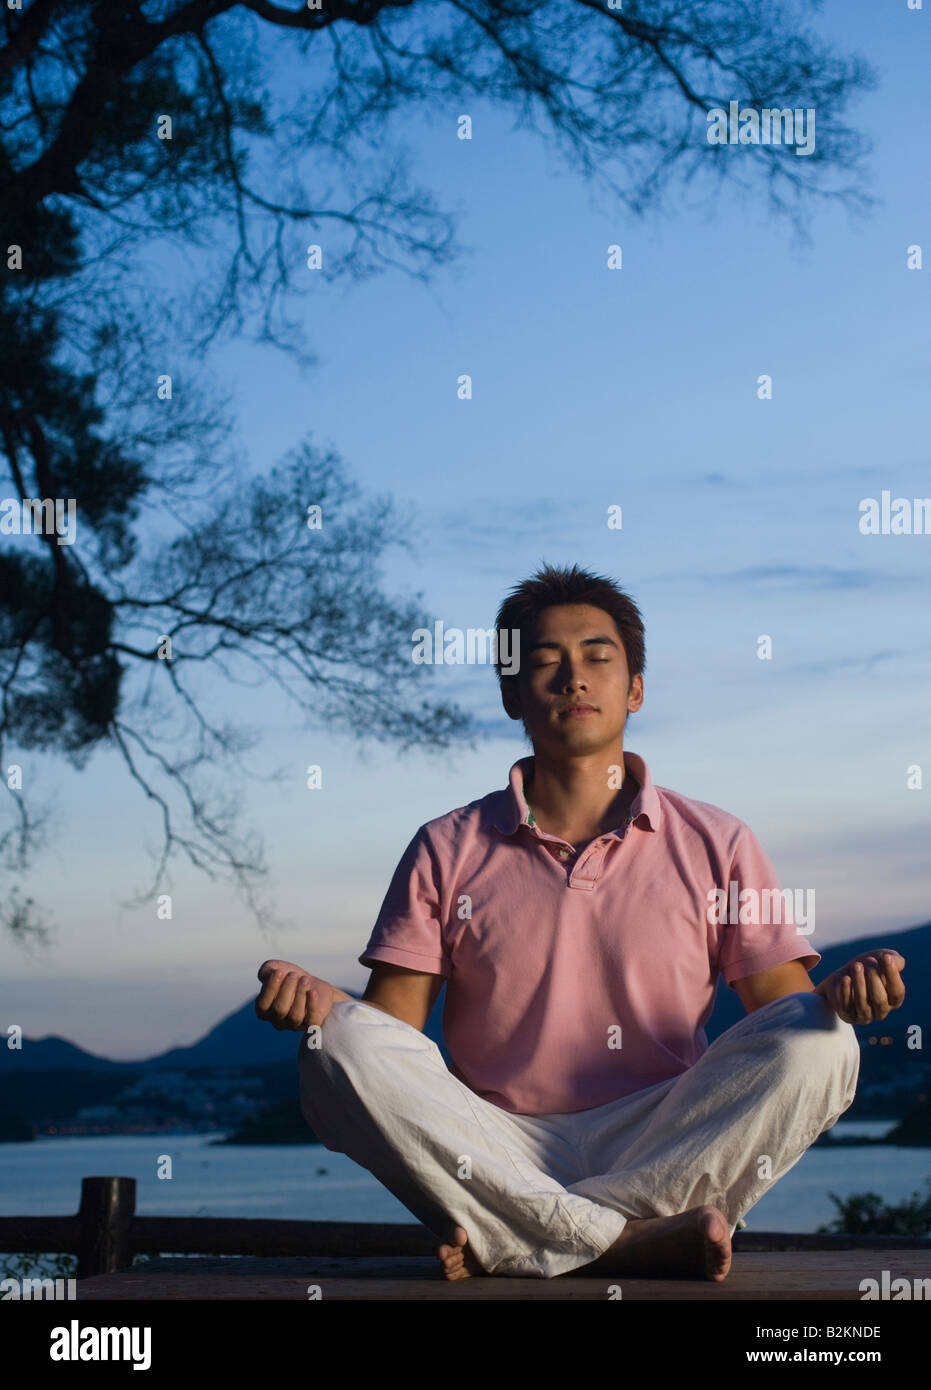 Jeune homme méditant dans une position du lotus Banque D'Images